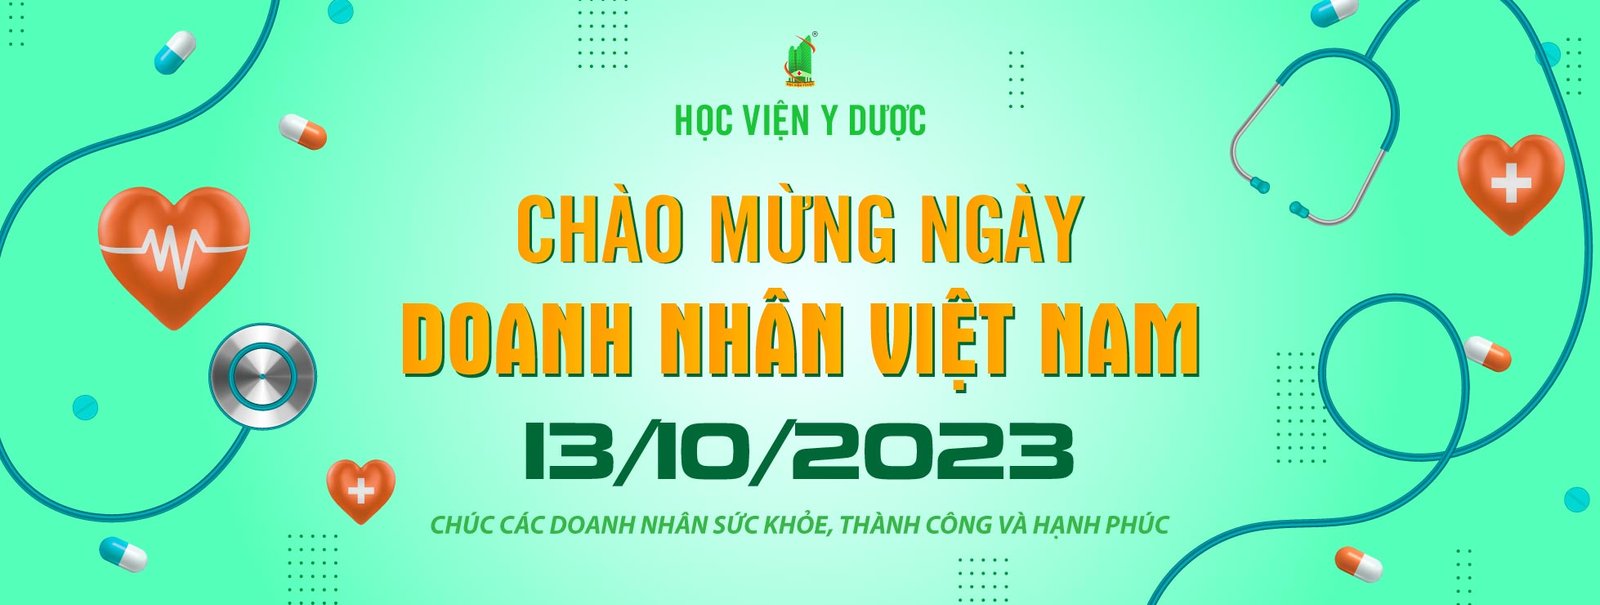 Học viện Y dược chào mừng ngày doanh nhân Việt Nam 13-10-2023